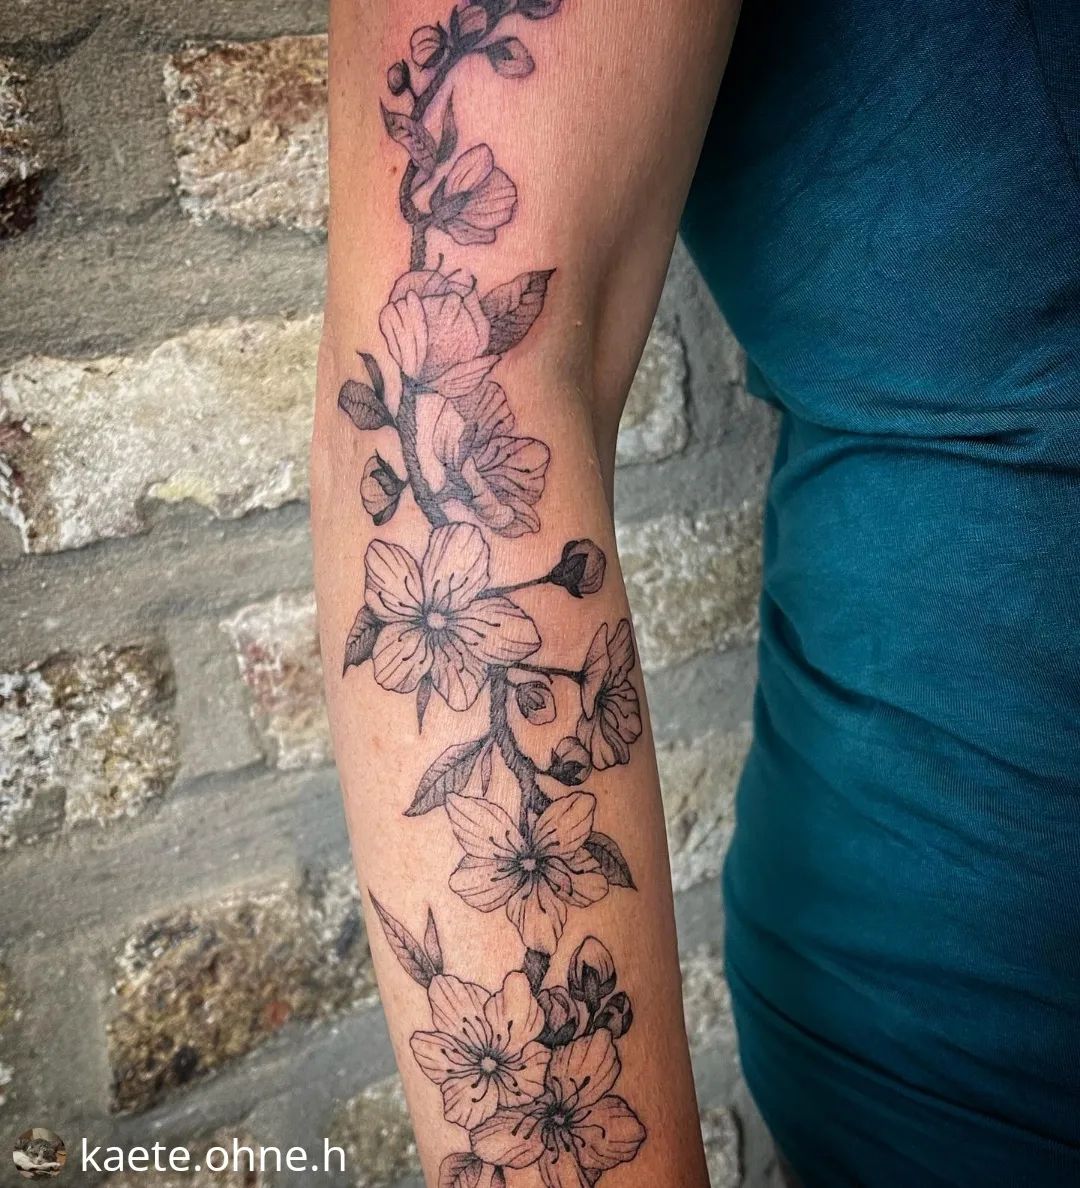 Neu von @kaete.ohne.h
• • • • • •
Mandelblüten  #ink #inked #art #tattooed #tatt